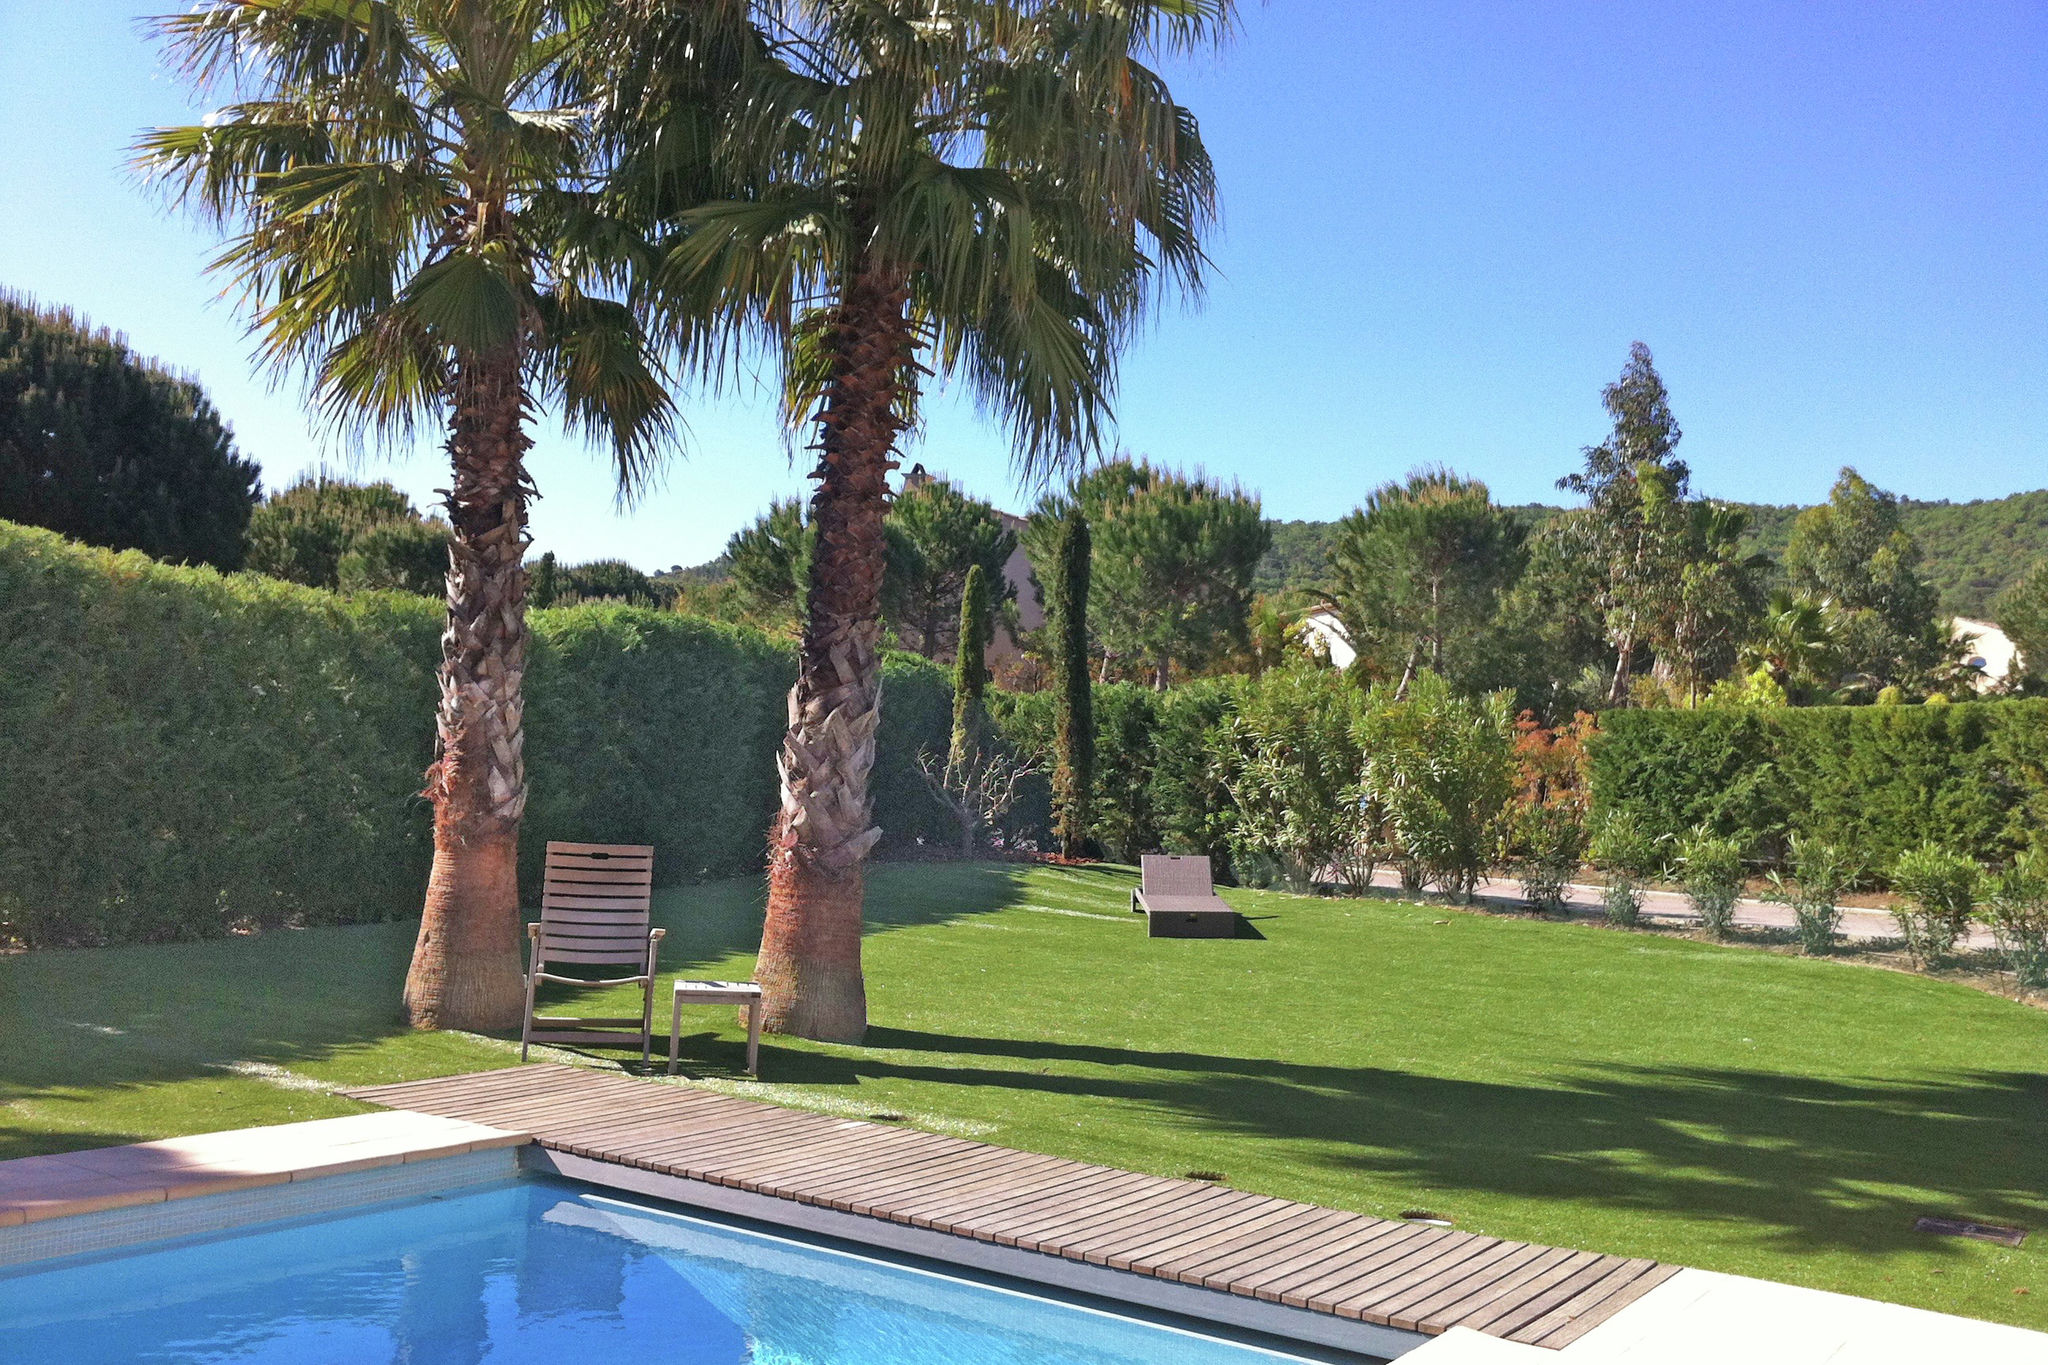 Mediterrane villa met privézwembad vlak bij St. Tropez